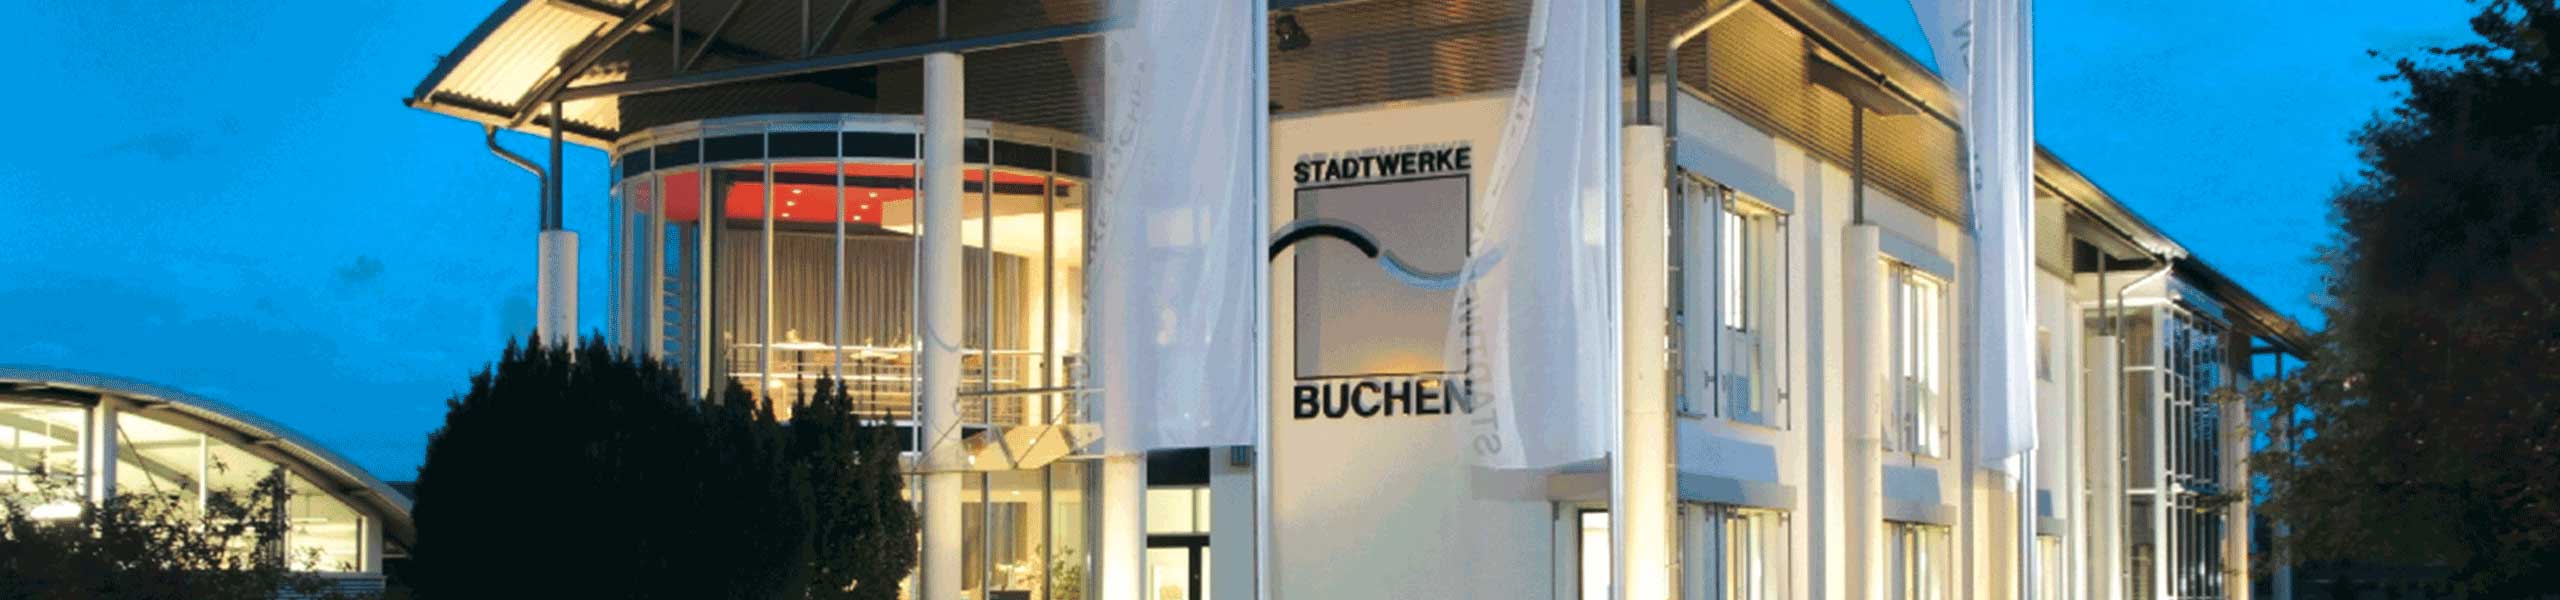 Stadtwerke Buchen GmbH & Co KG - Ihr Versorger vor Ort - Kundenzeitschrift